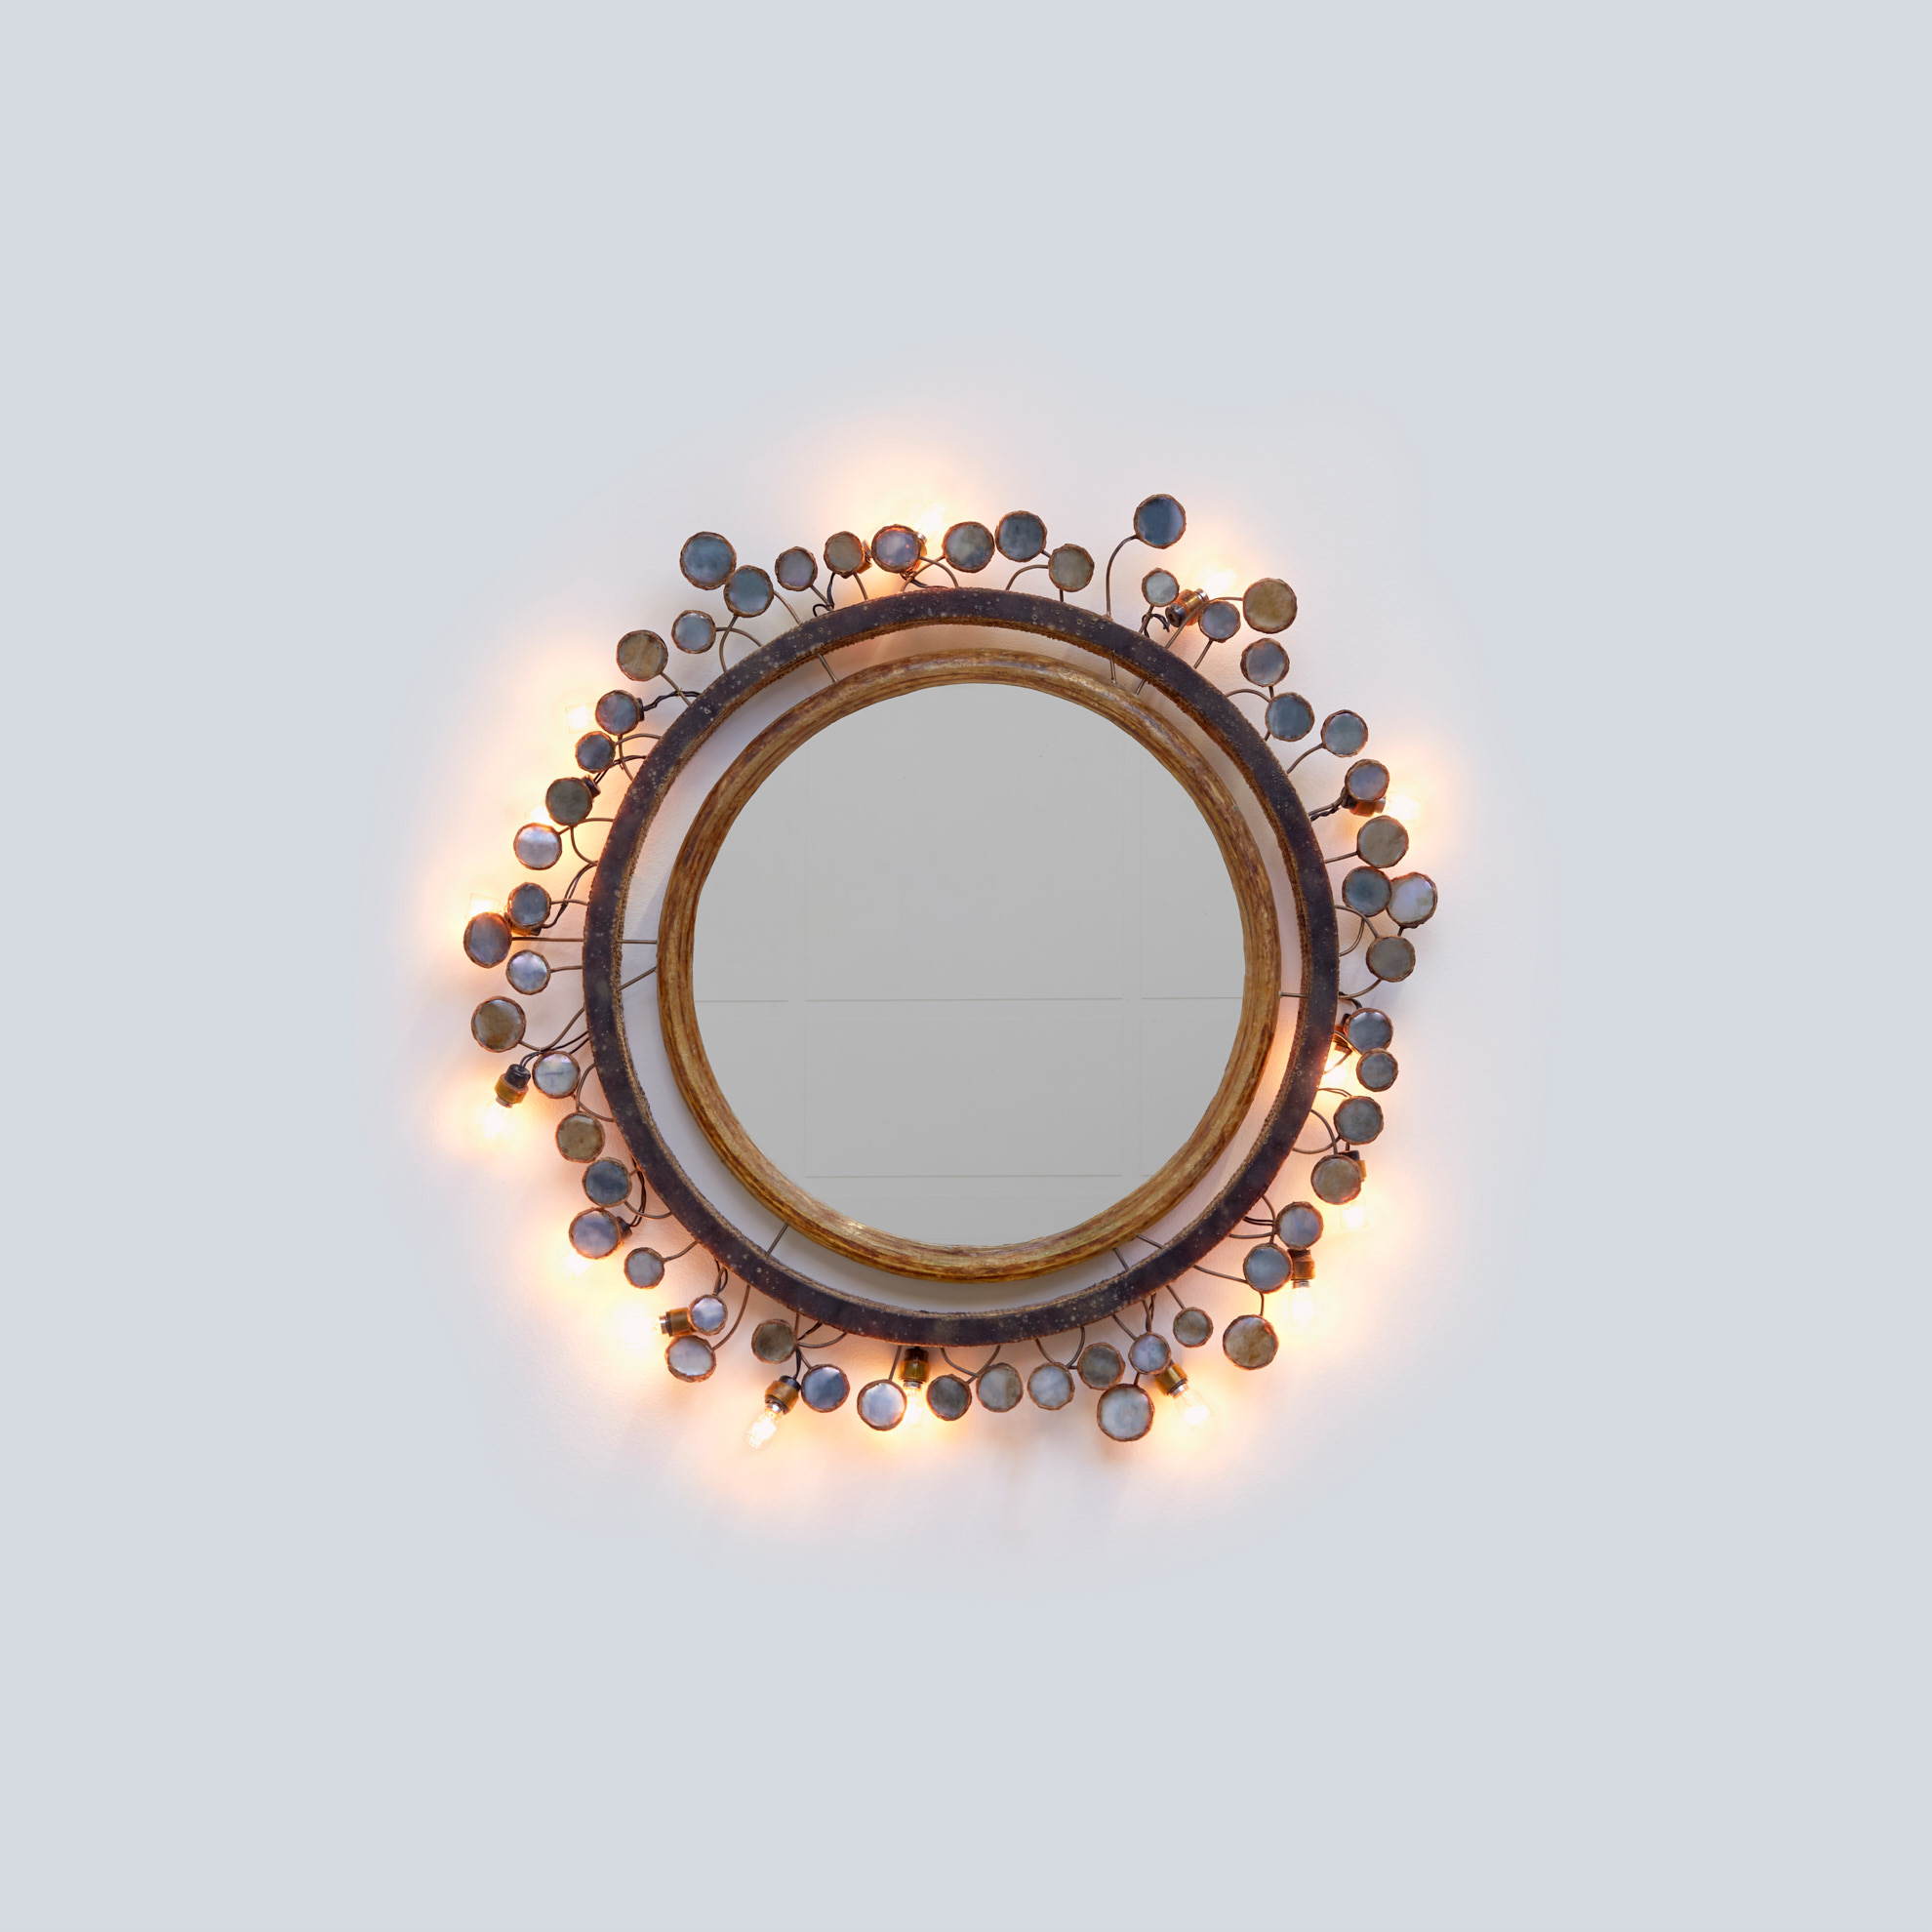 Line Vautrin, ‘Sequins’ enlightening mirror, vue 01